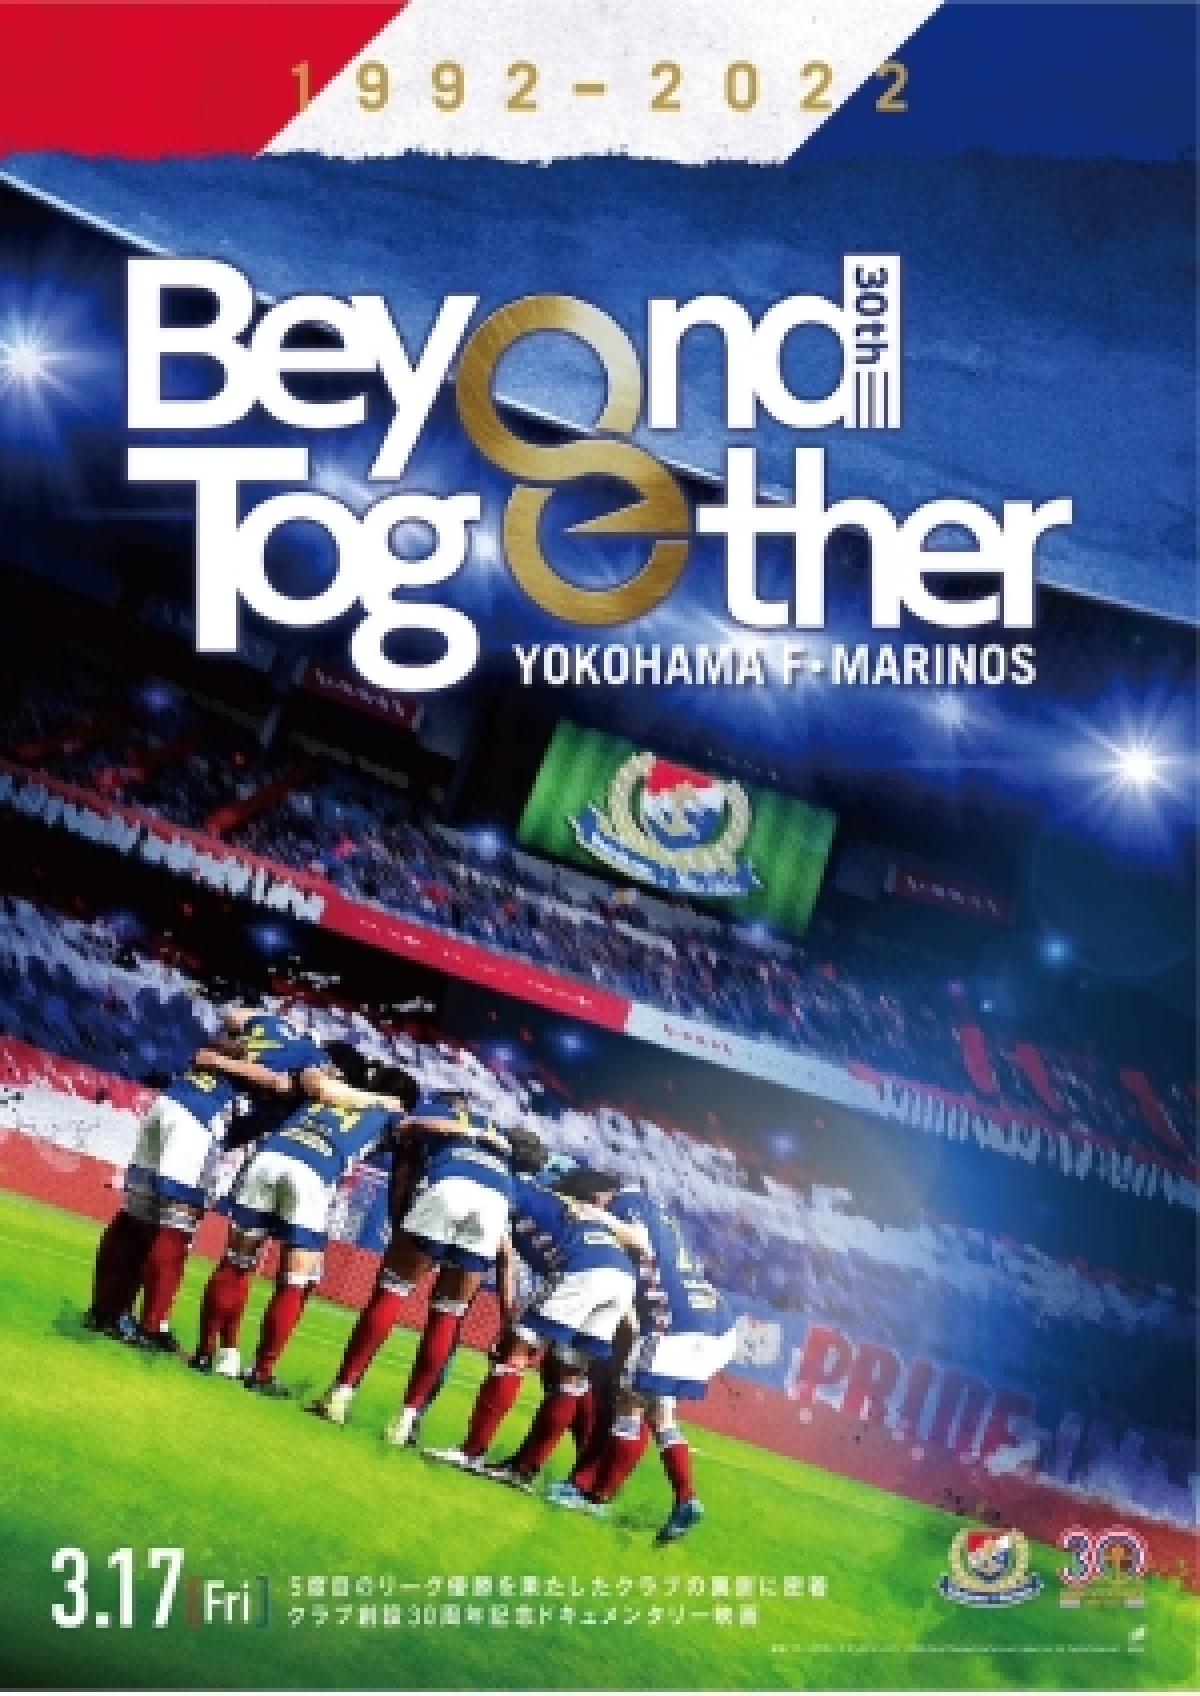 ドキュメンタリー映画「Beyond Together」 | 映画 | テレビマン 